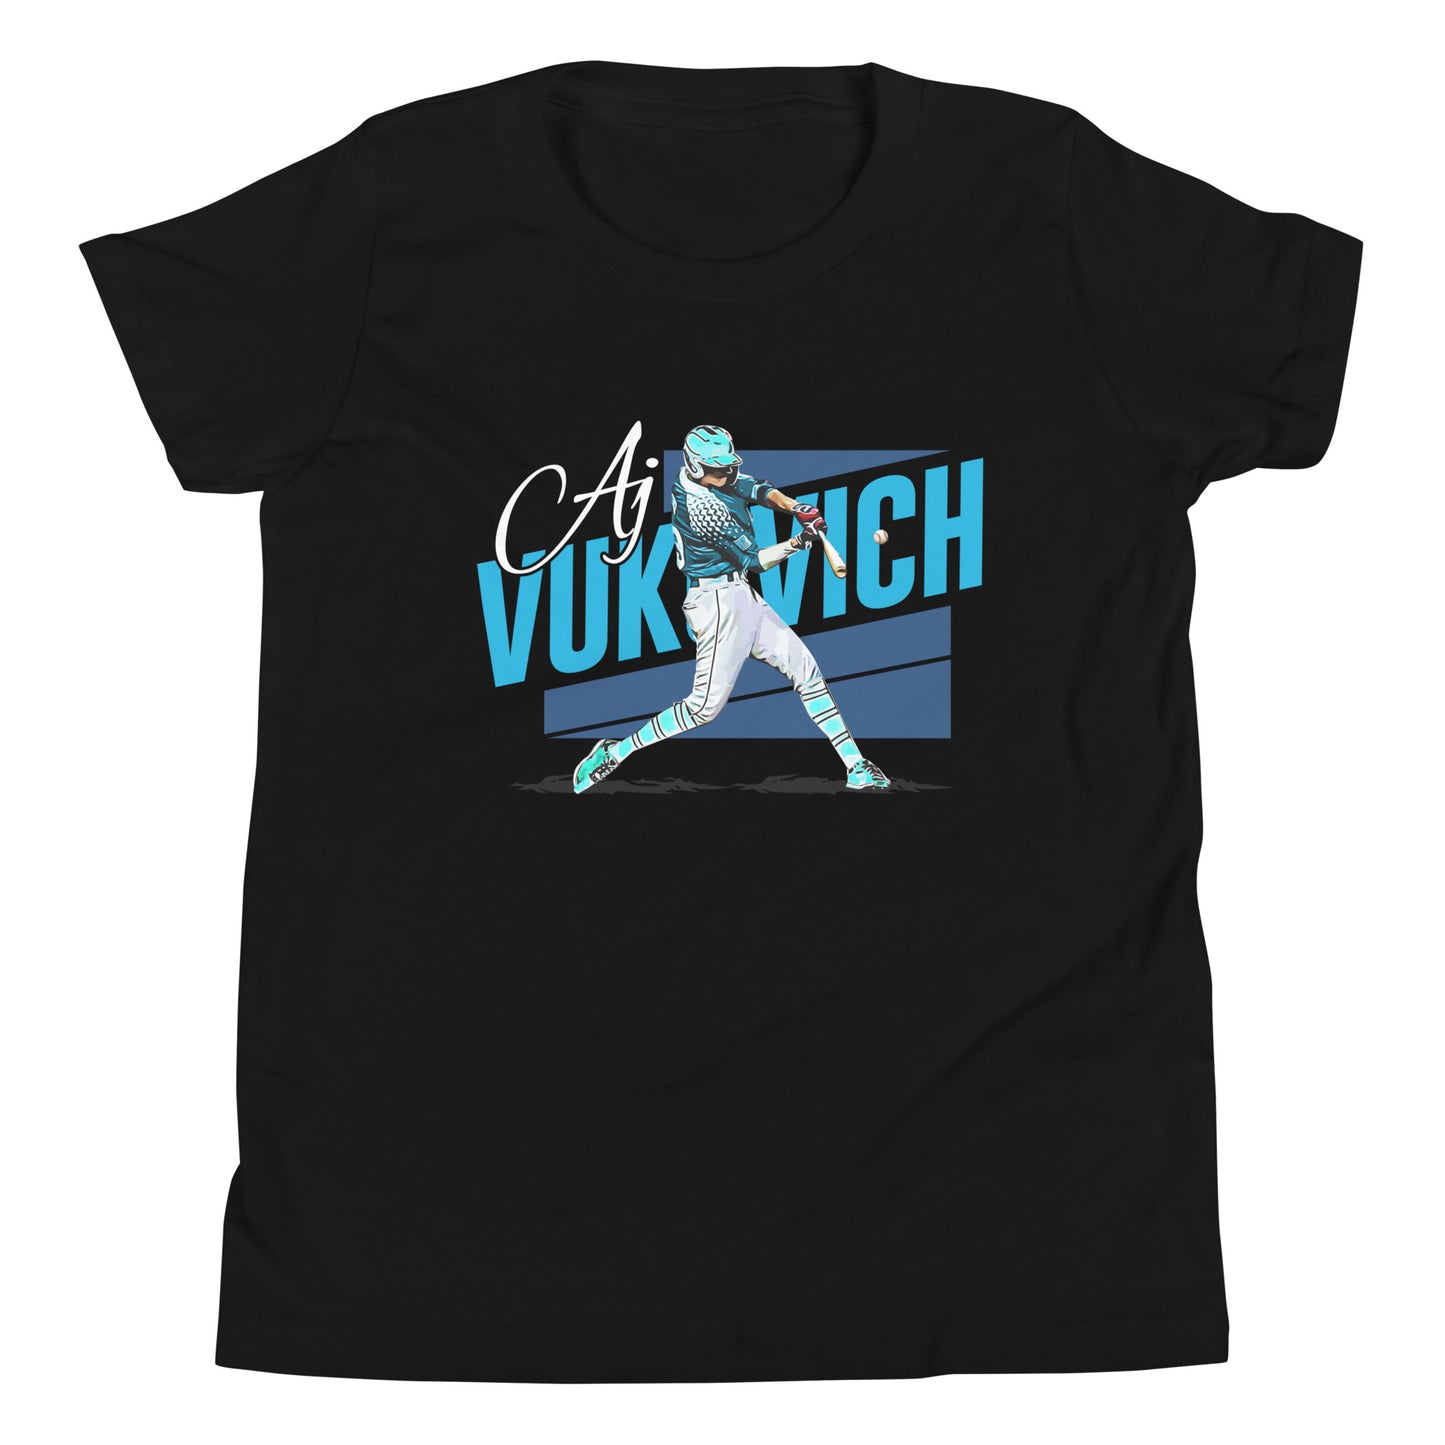 AJ Vukovich "Icon" Youth T-Shirt - Fan Arch